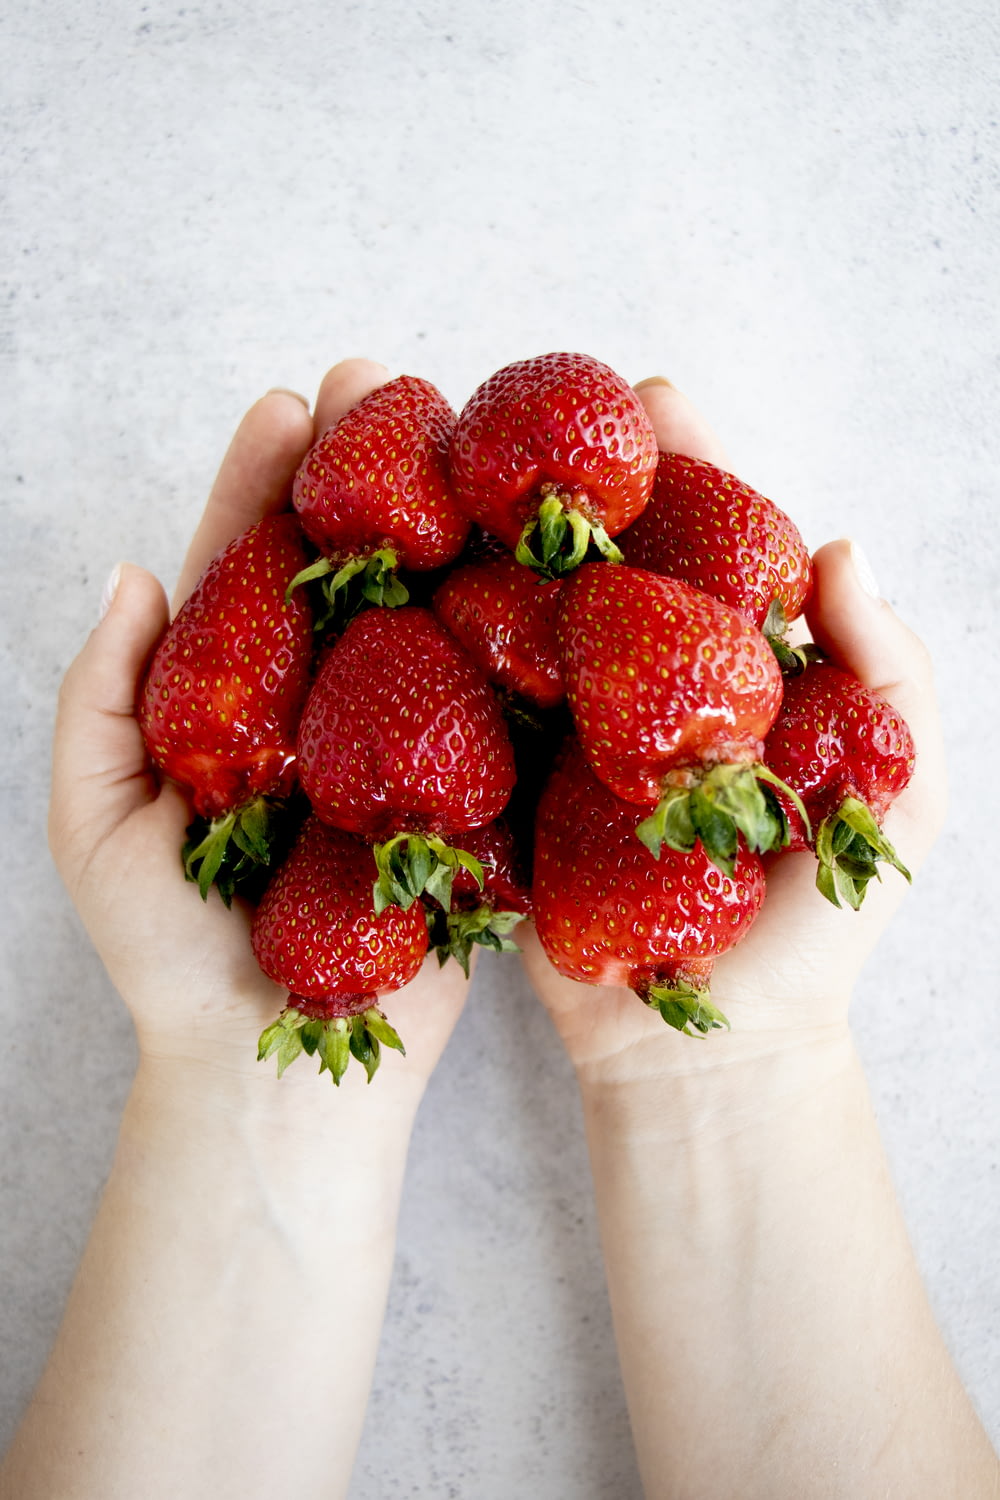 Erdbeeren an der Hand von Personen